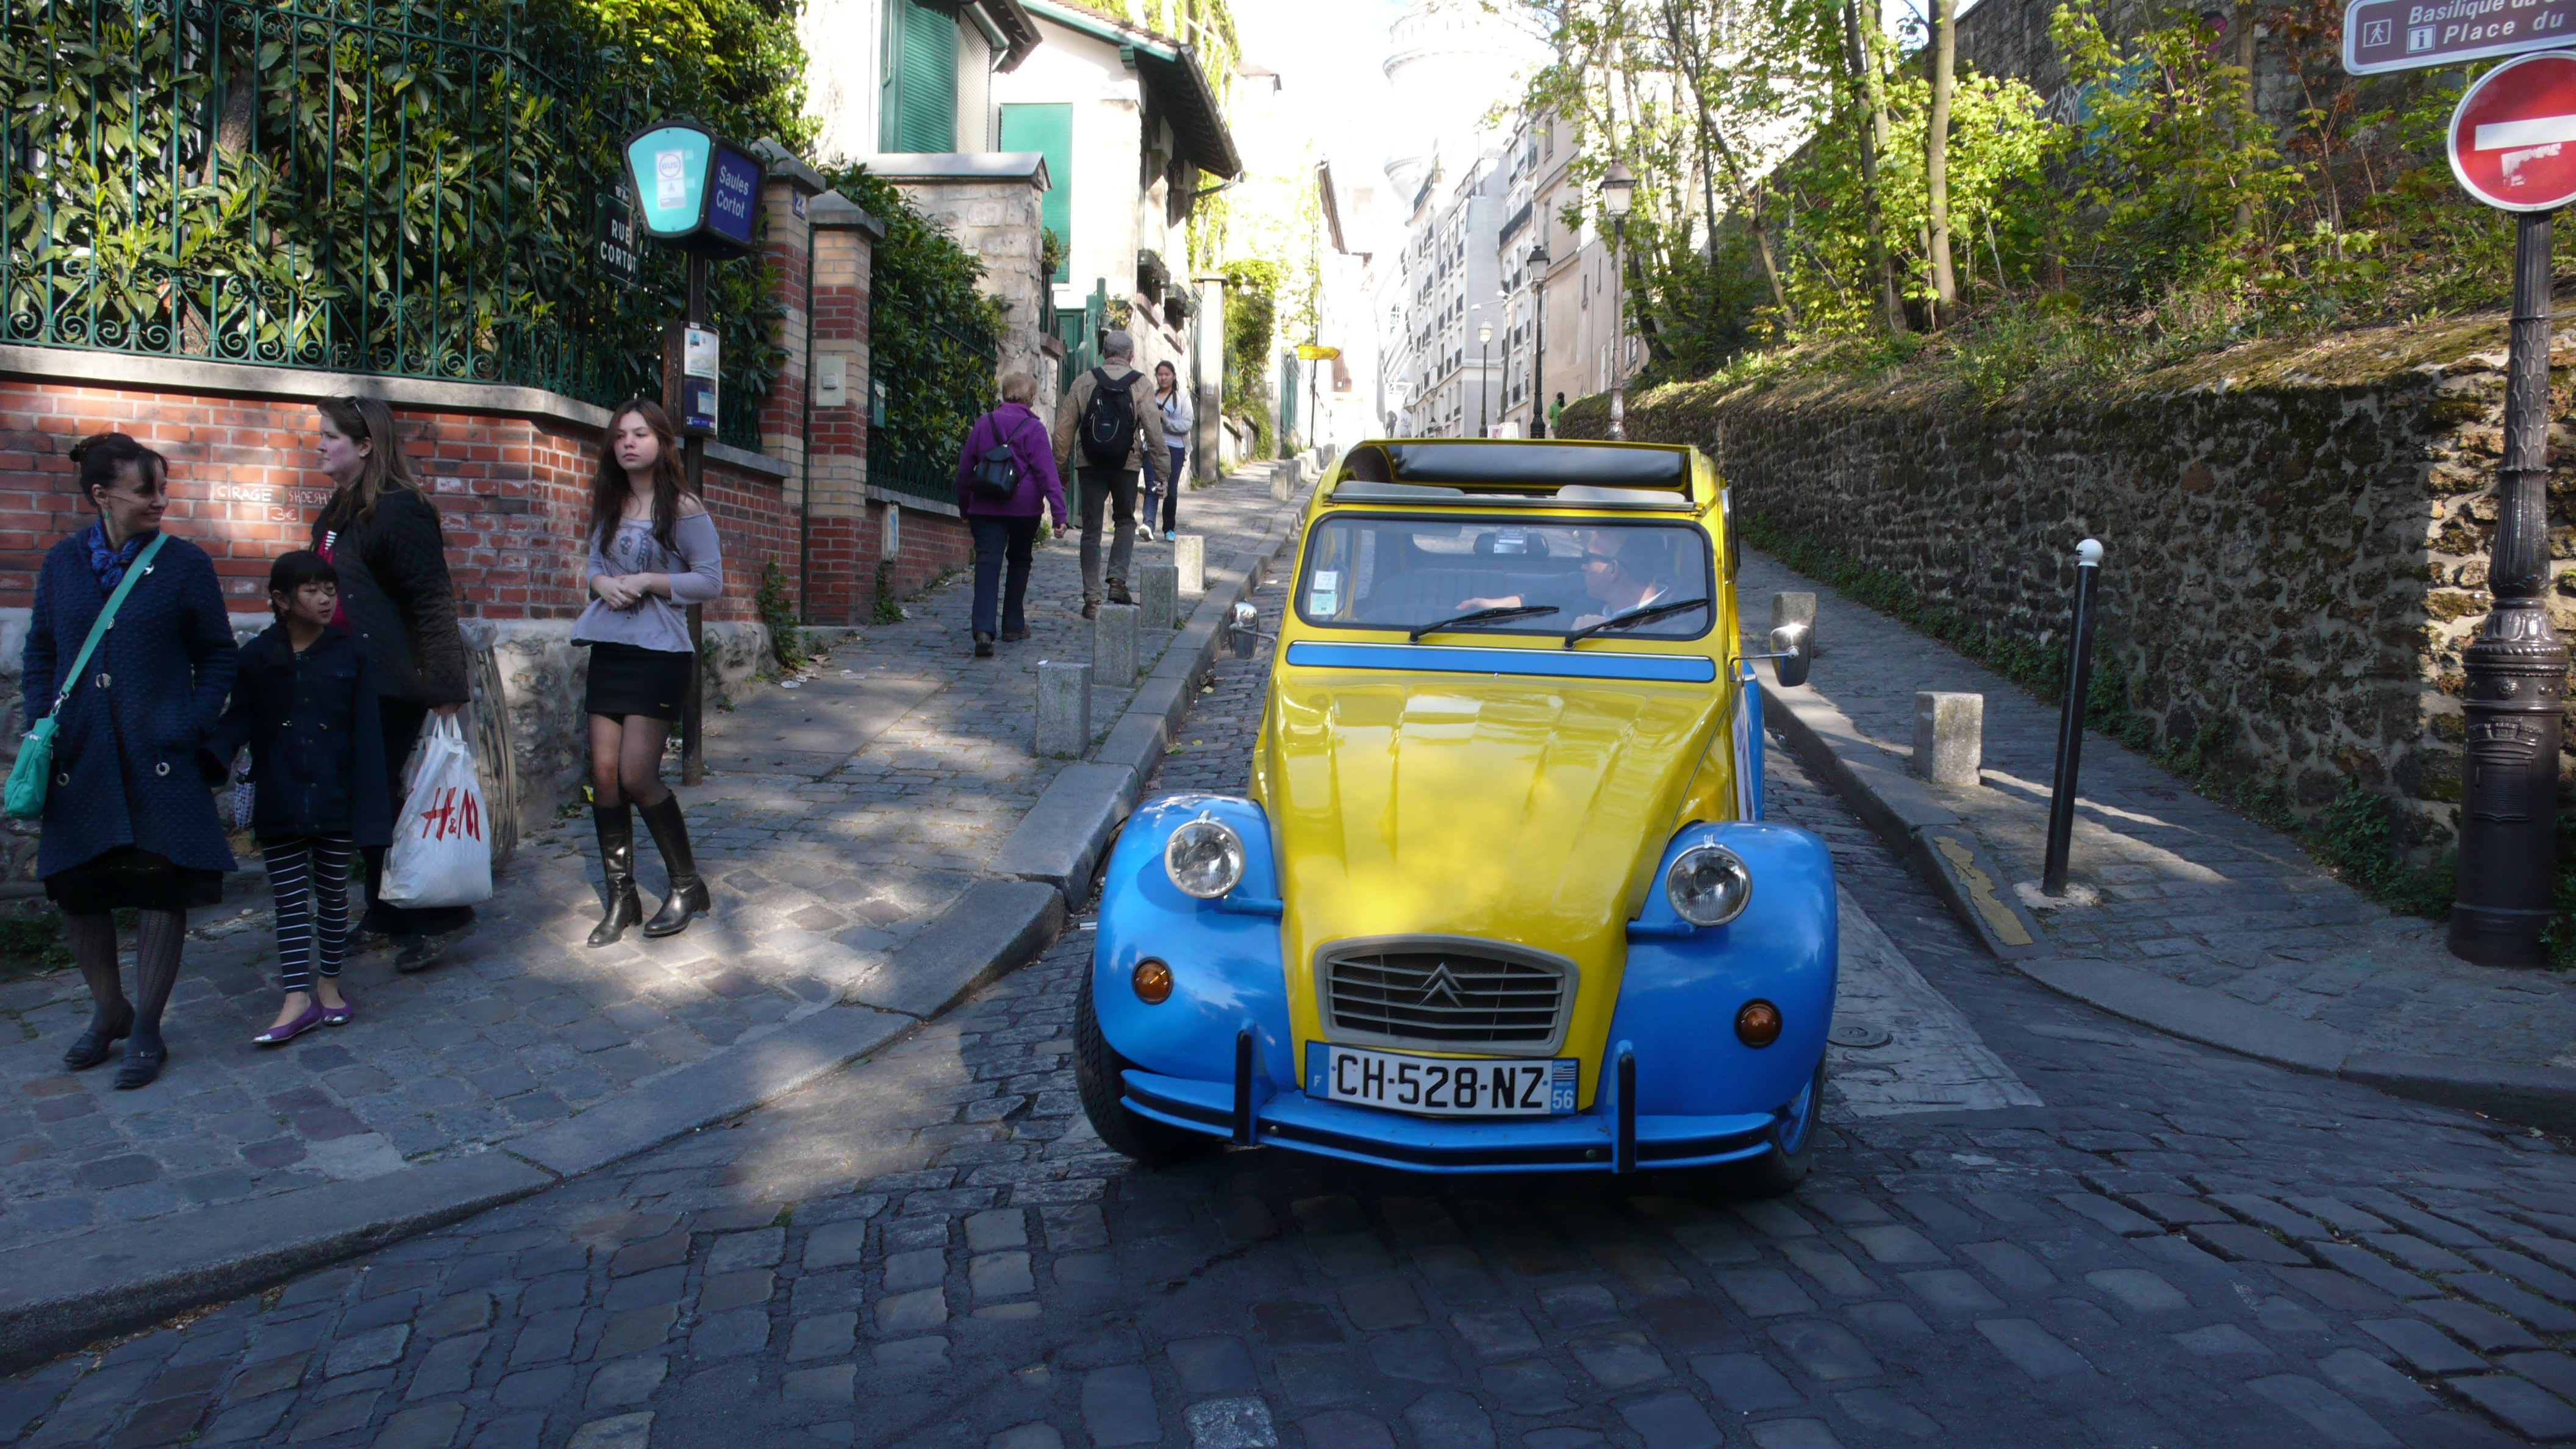 2CV Paris Tour : Visit Paris by 2CV! A 2CV trip in the streets of Montmartre